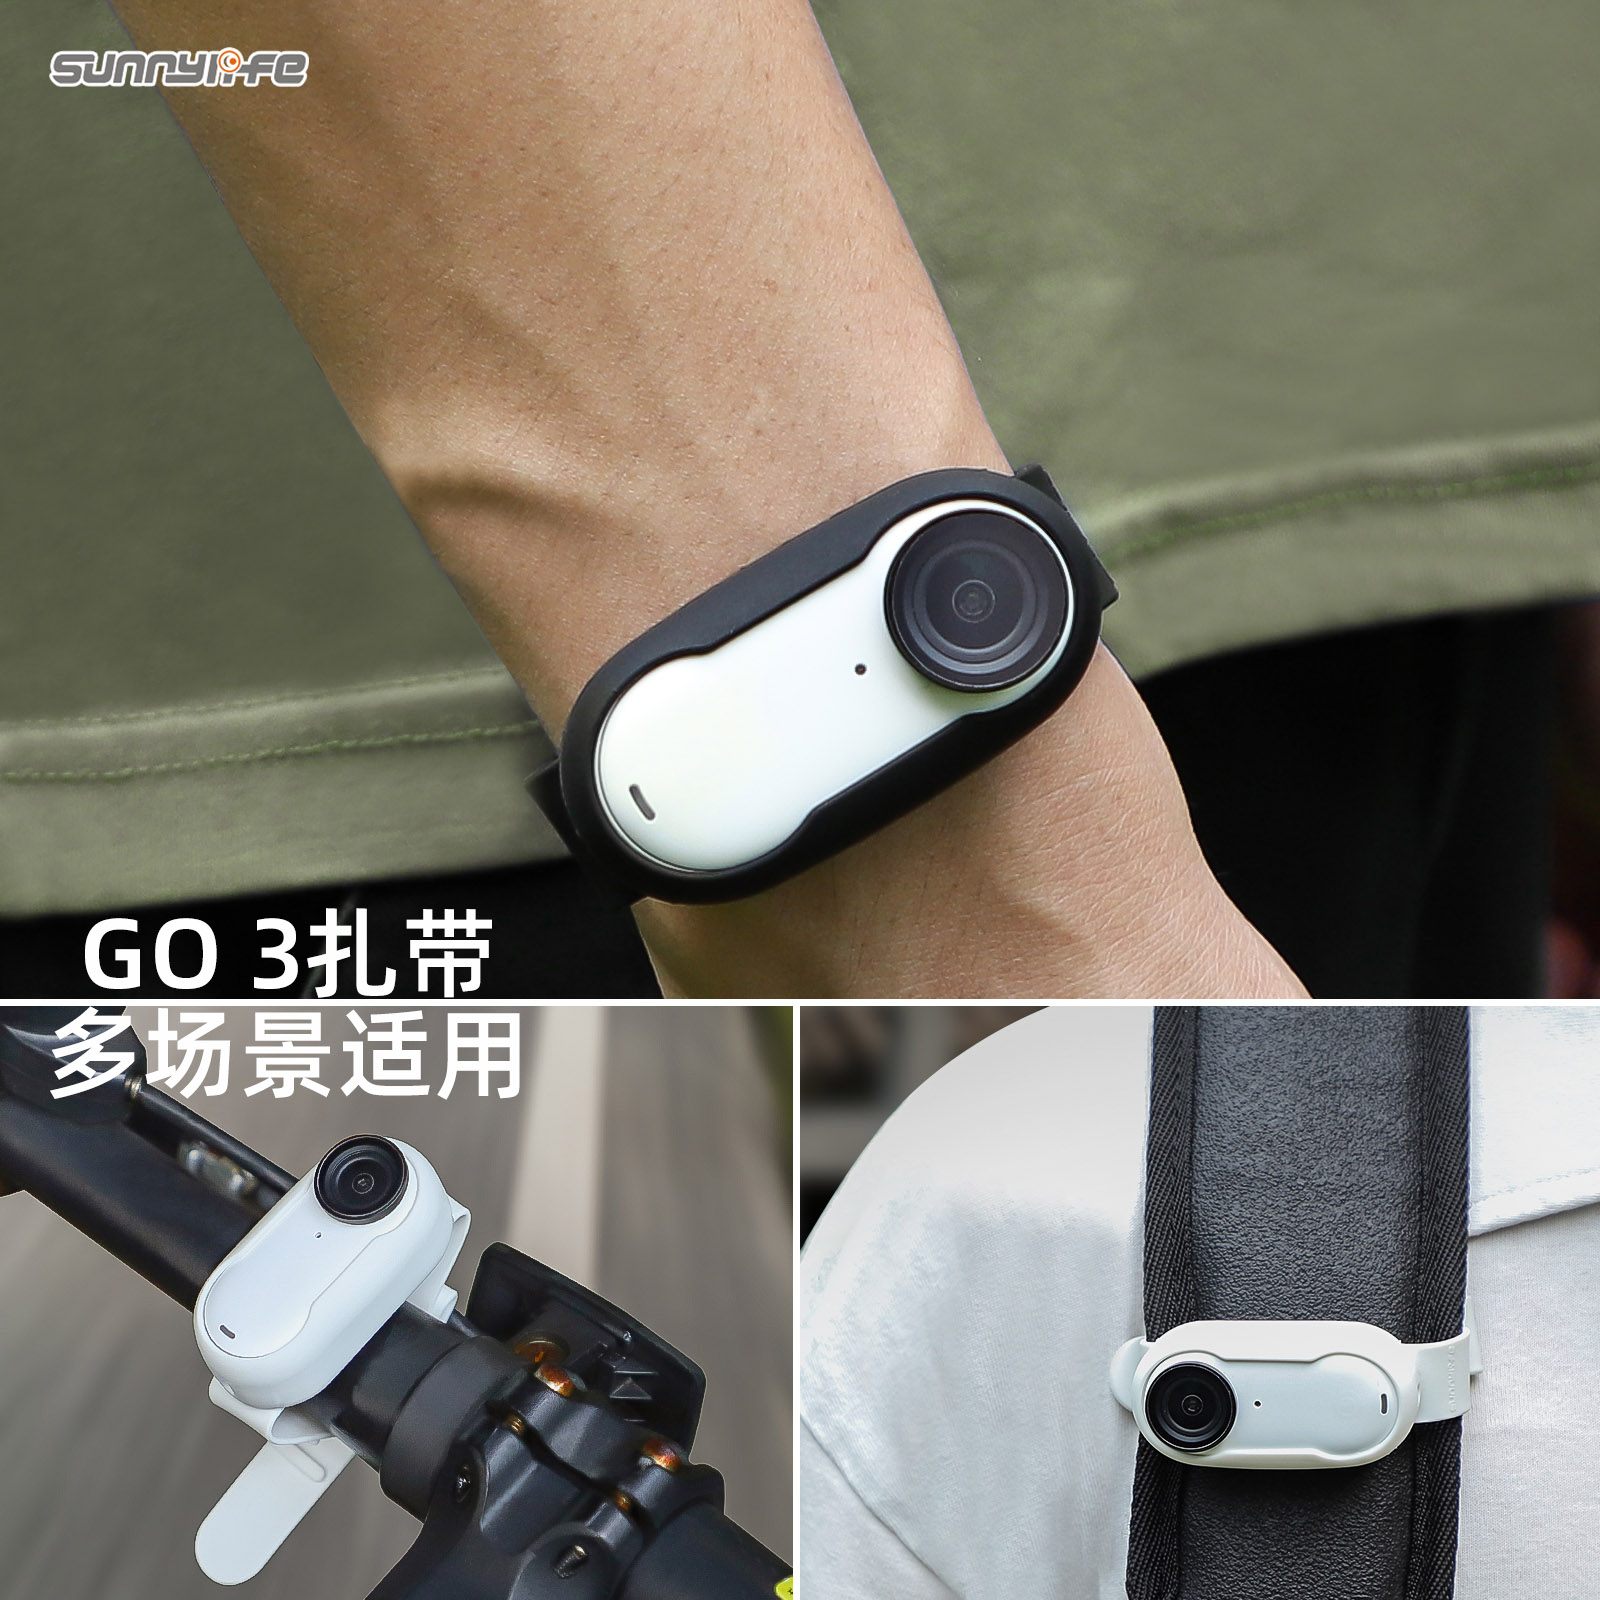 Insta360 GO3扎带硅胶套腕带背包单车绑带相机拓展配件包邮推荐